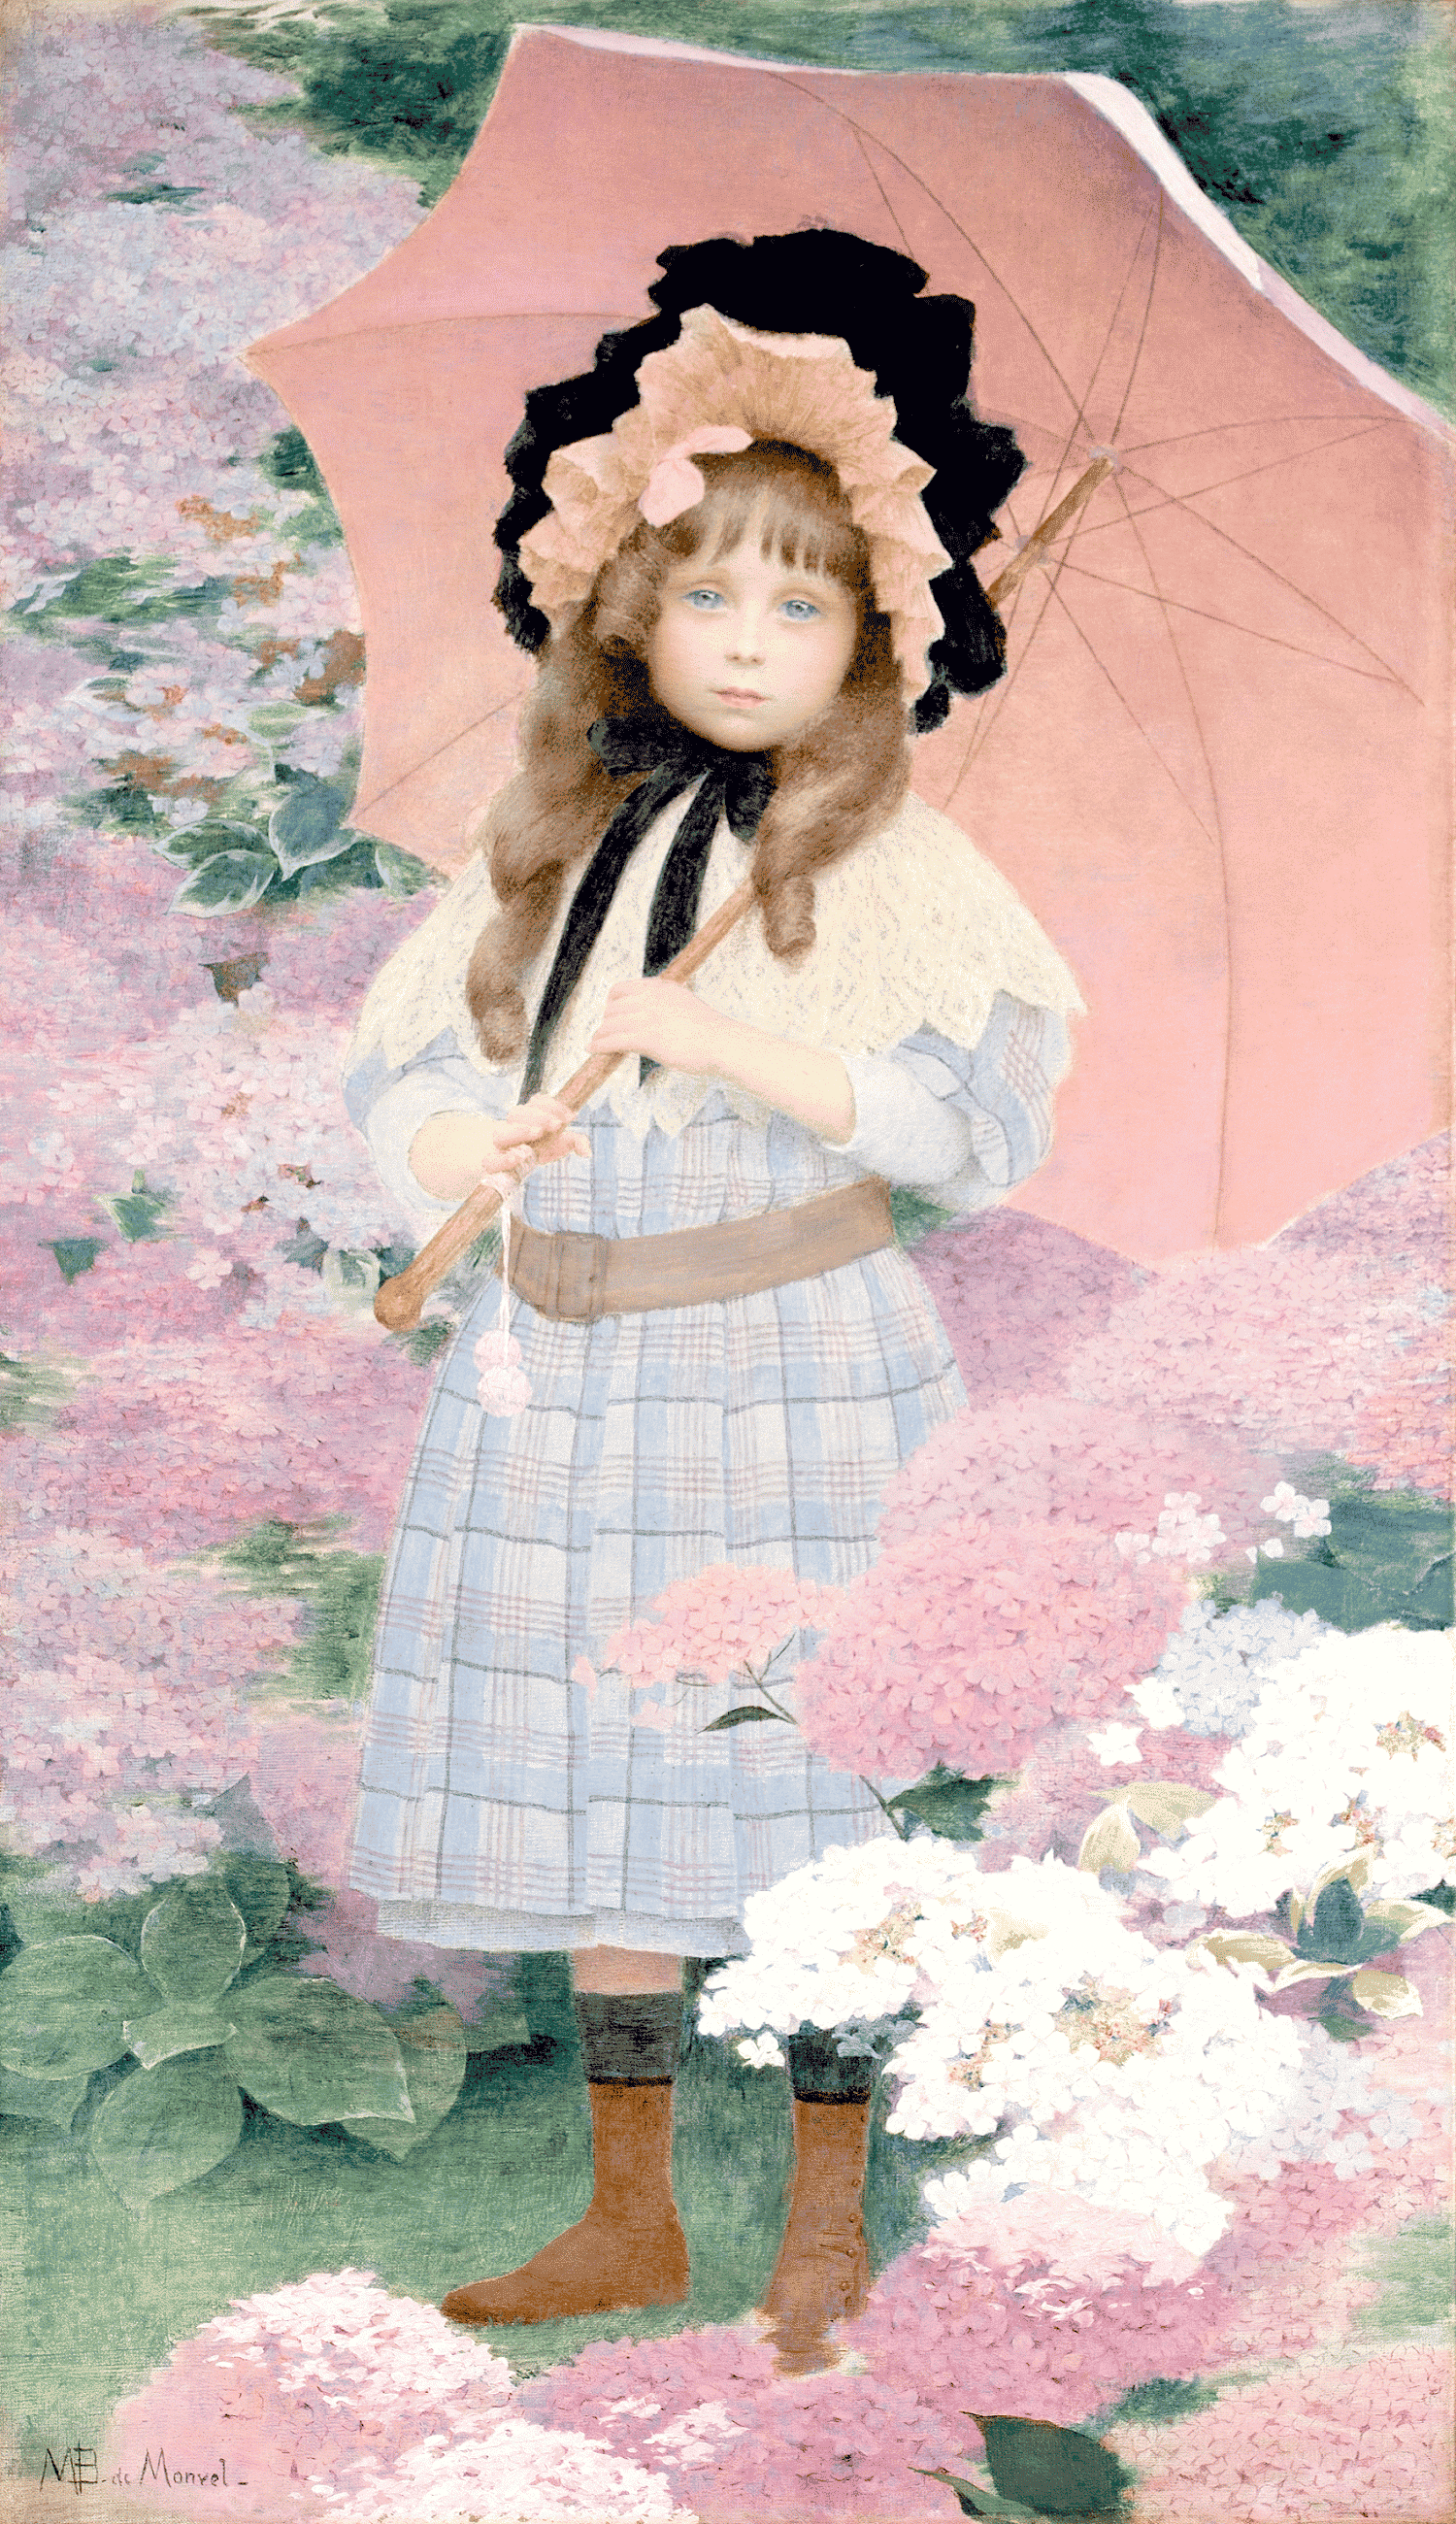 Exposition musée des impressionnismes Giverny - Les enfants de l'impressionnisme